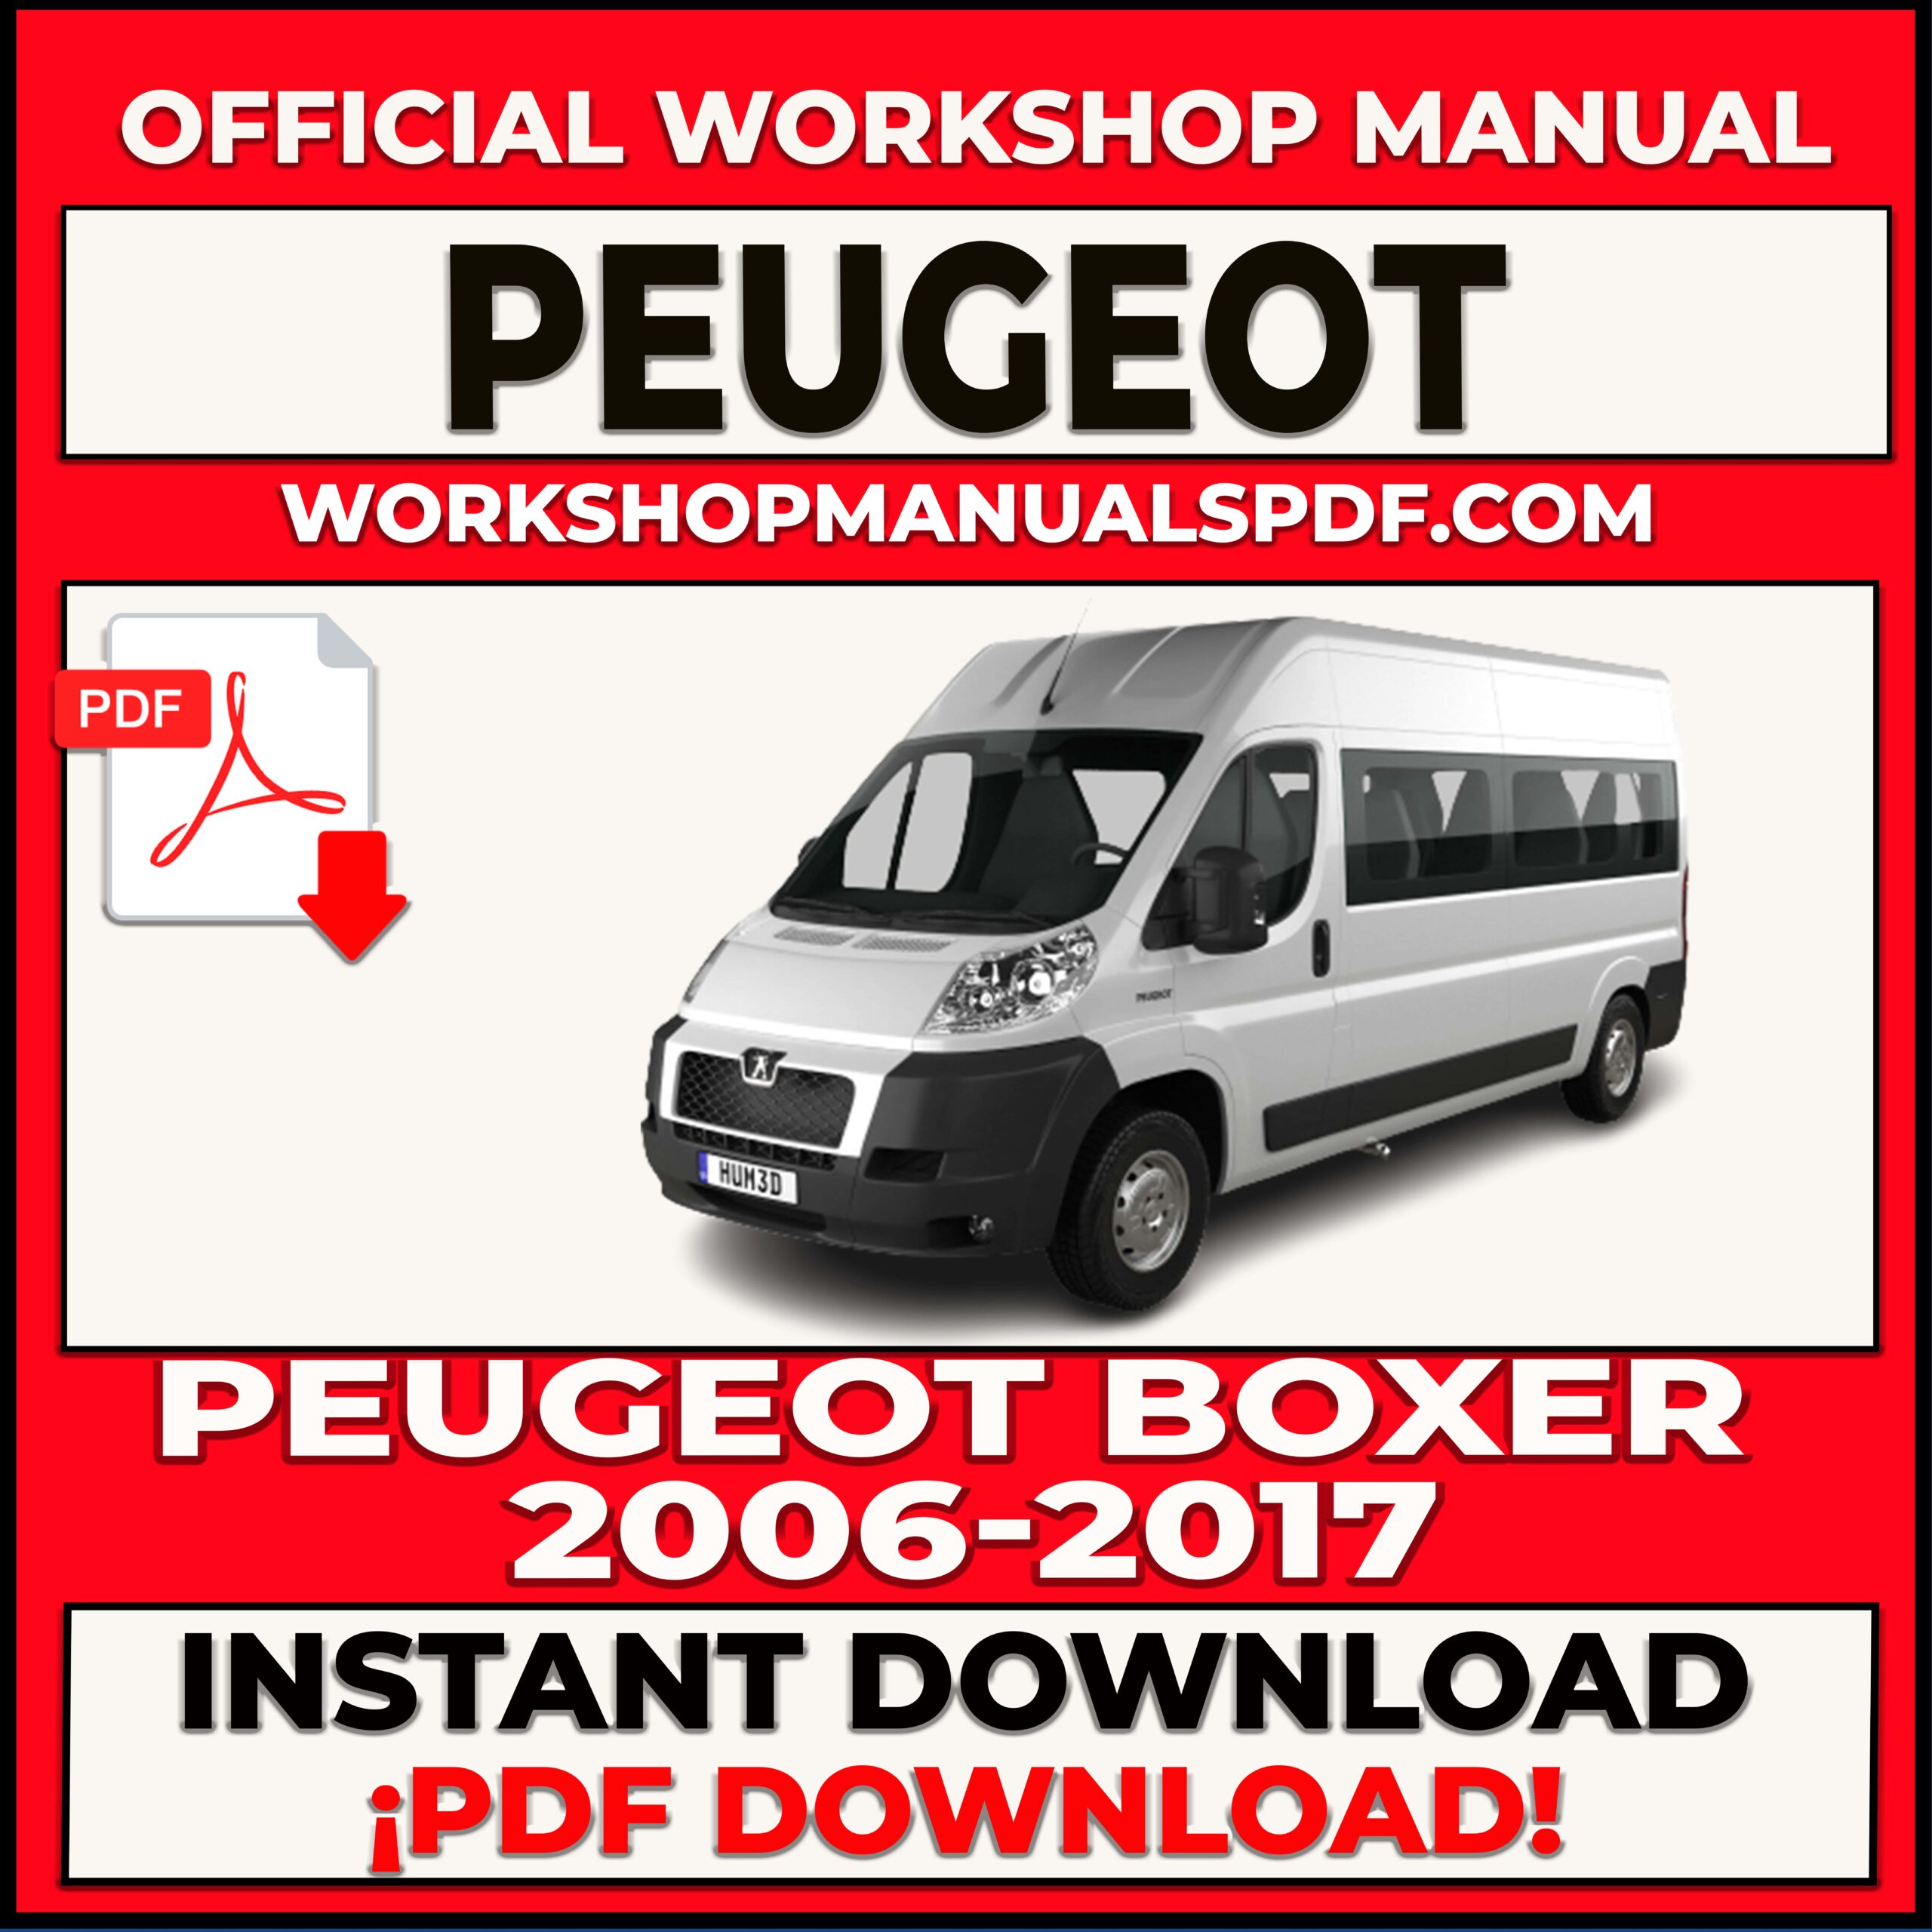 Peugeot Boxer 2006-2017 Workshop Repair Manual